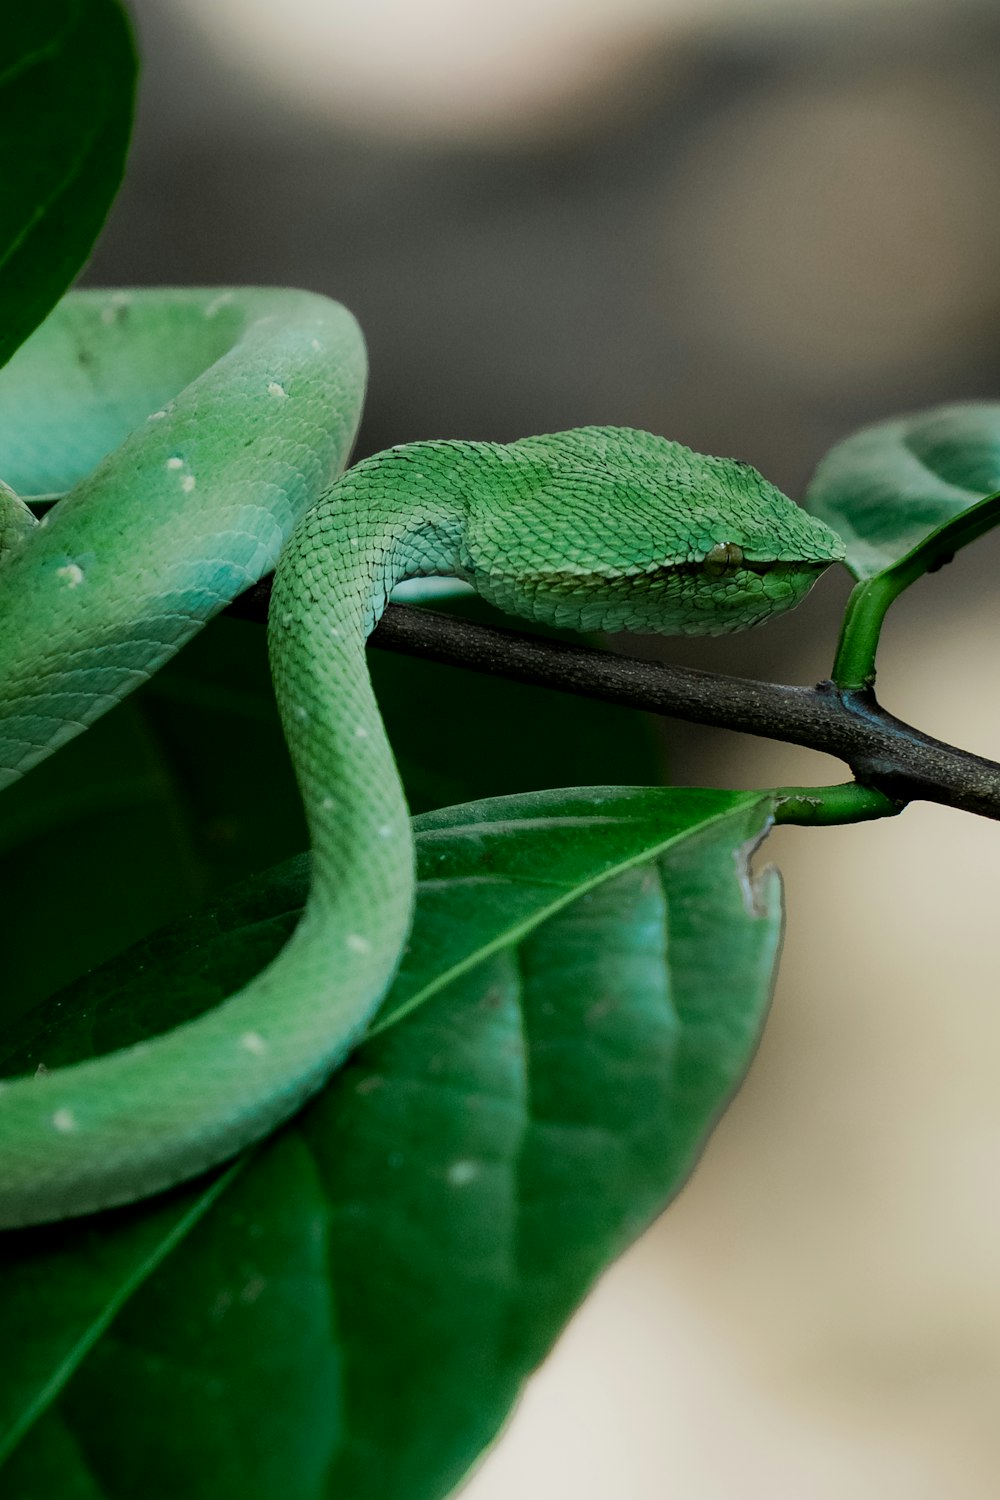 un serpent vert assis au sommet d’une feuille